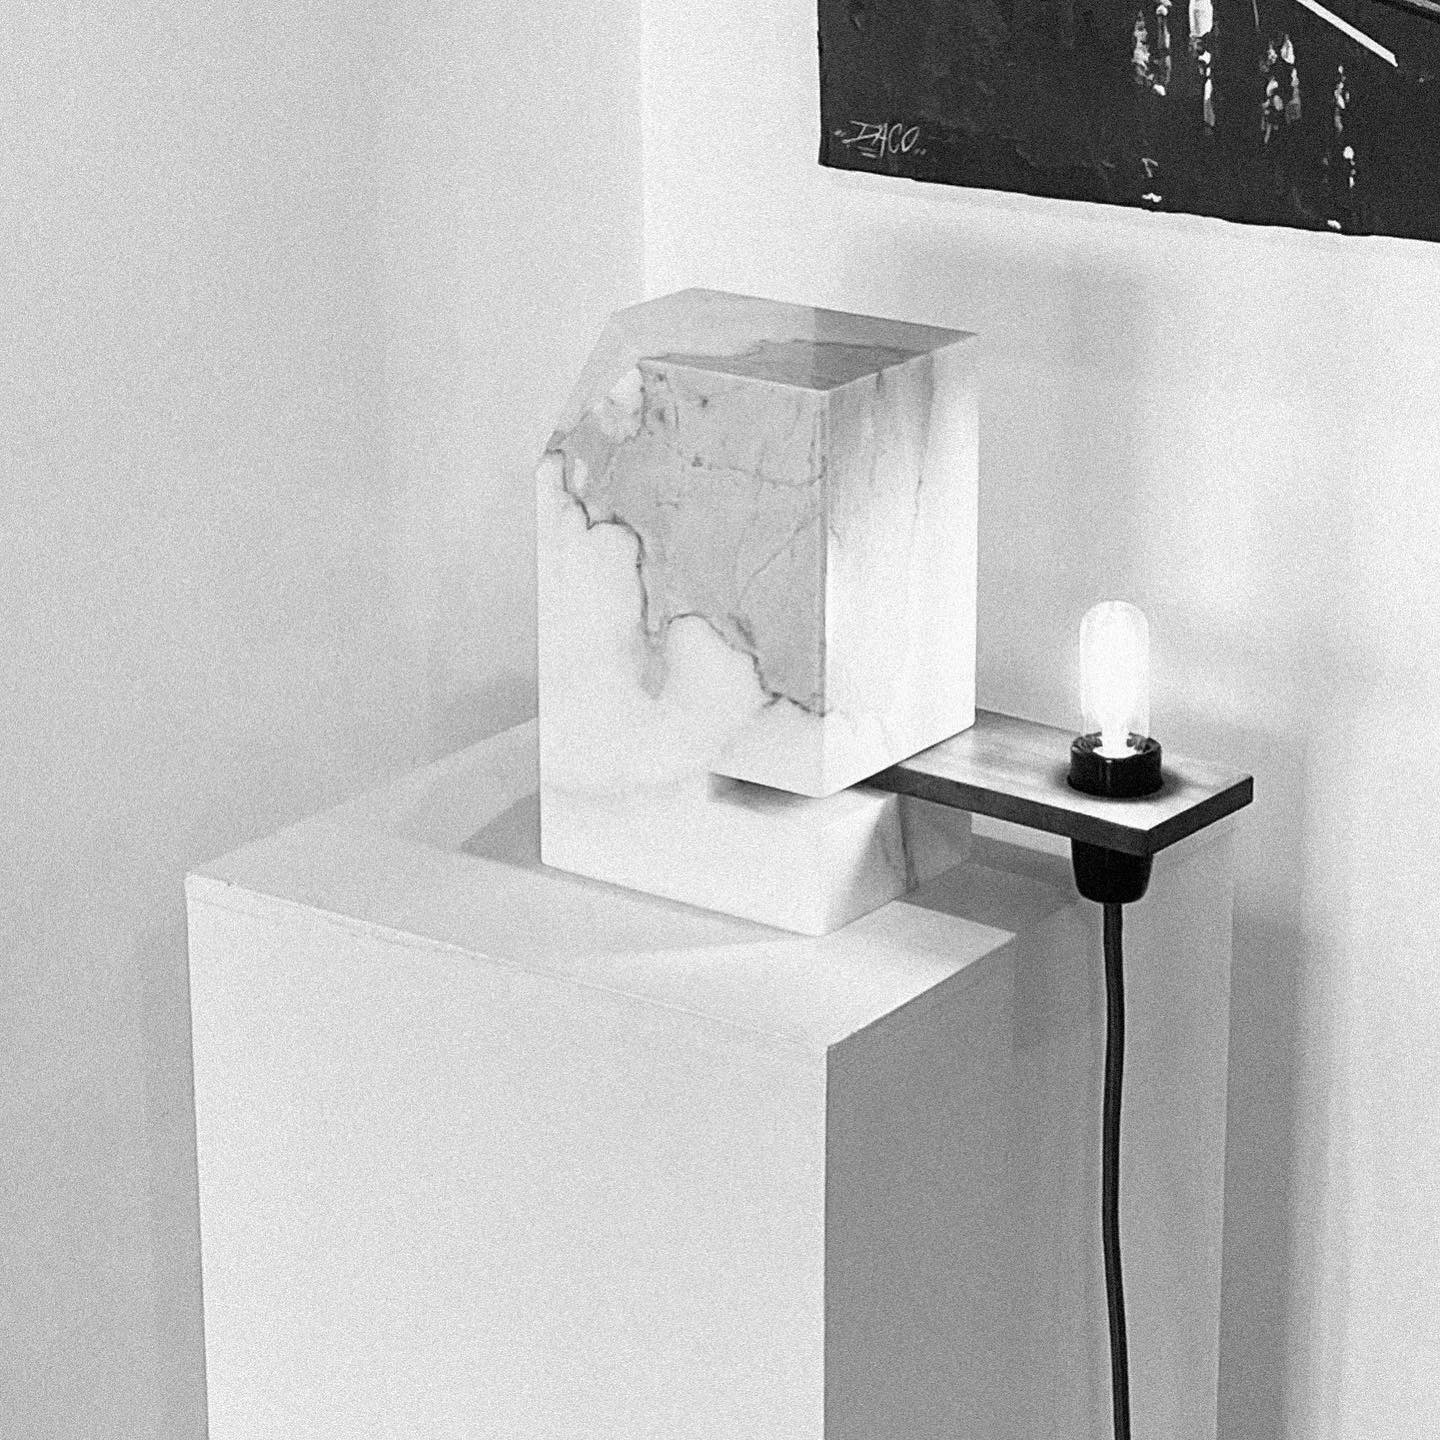 lampe une p&r variable arnaud pohl pr marbre carrare bois salon chambre bureau galerie vanaura versailles